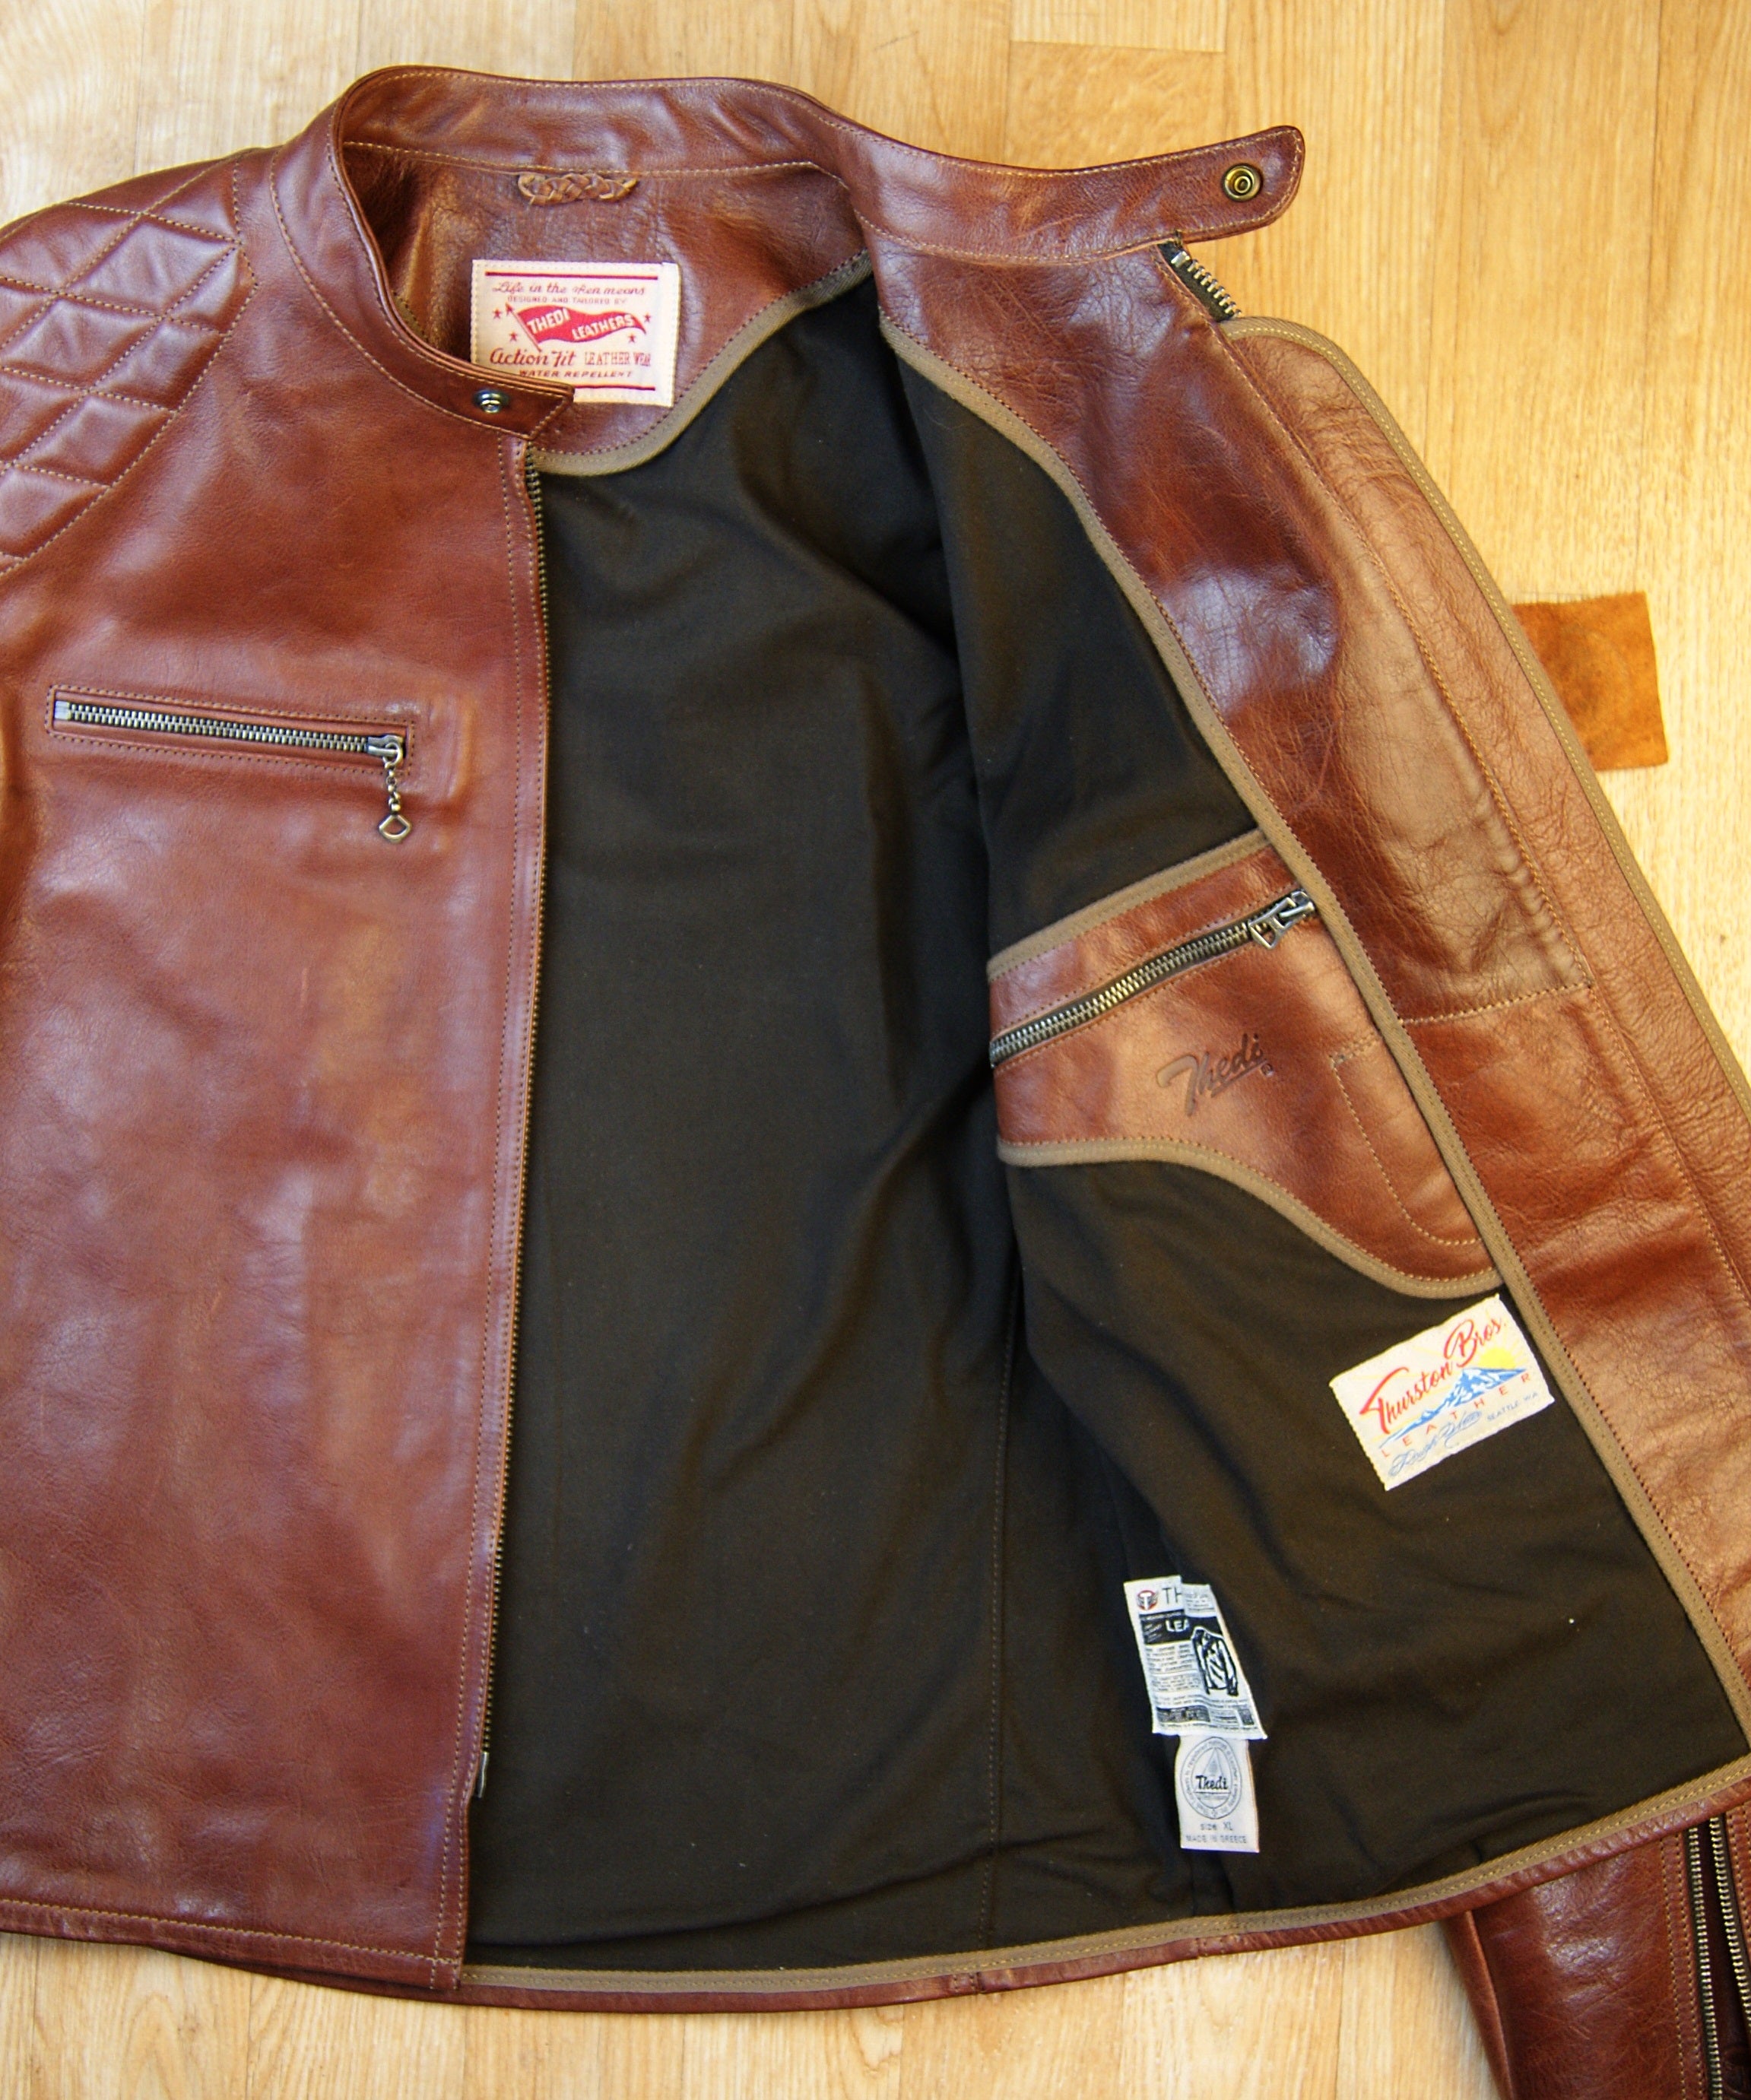 Thedi Phenix Cafe Racer Jacket, size XL, Caffe Buffalo